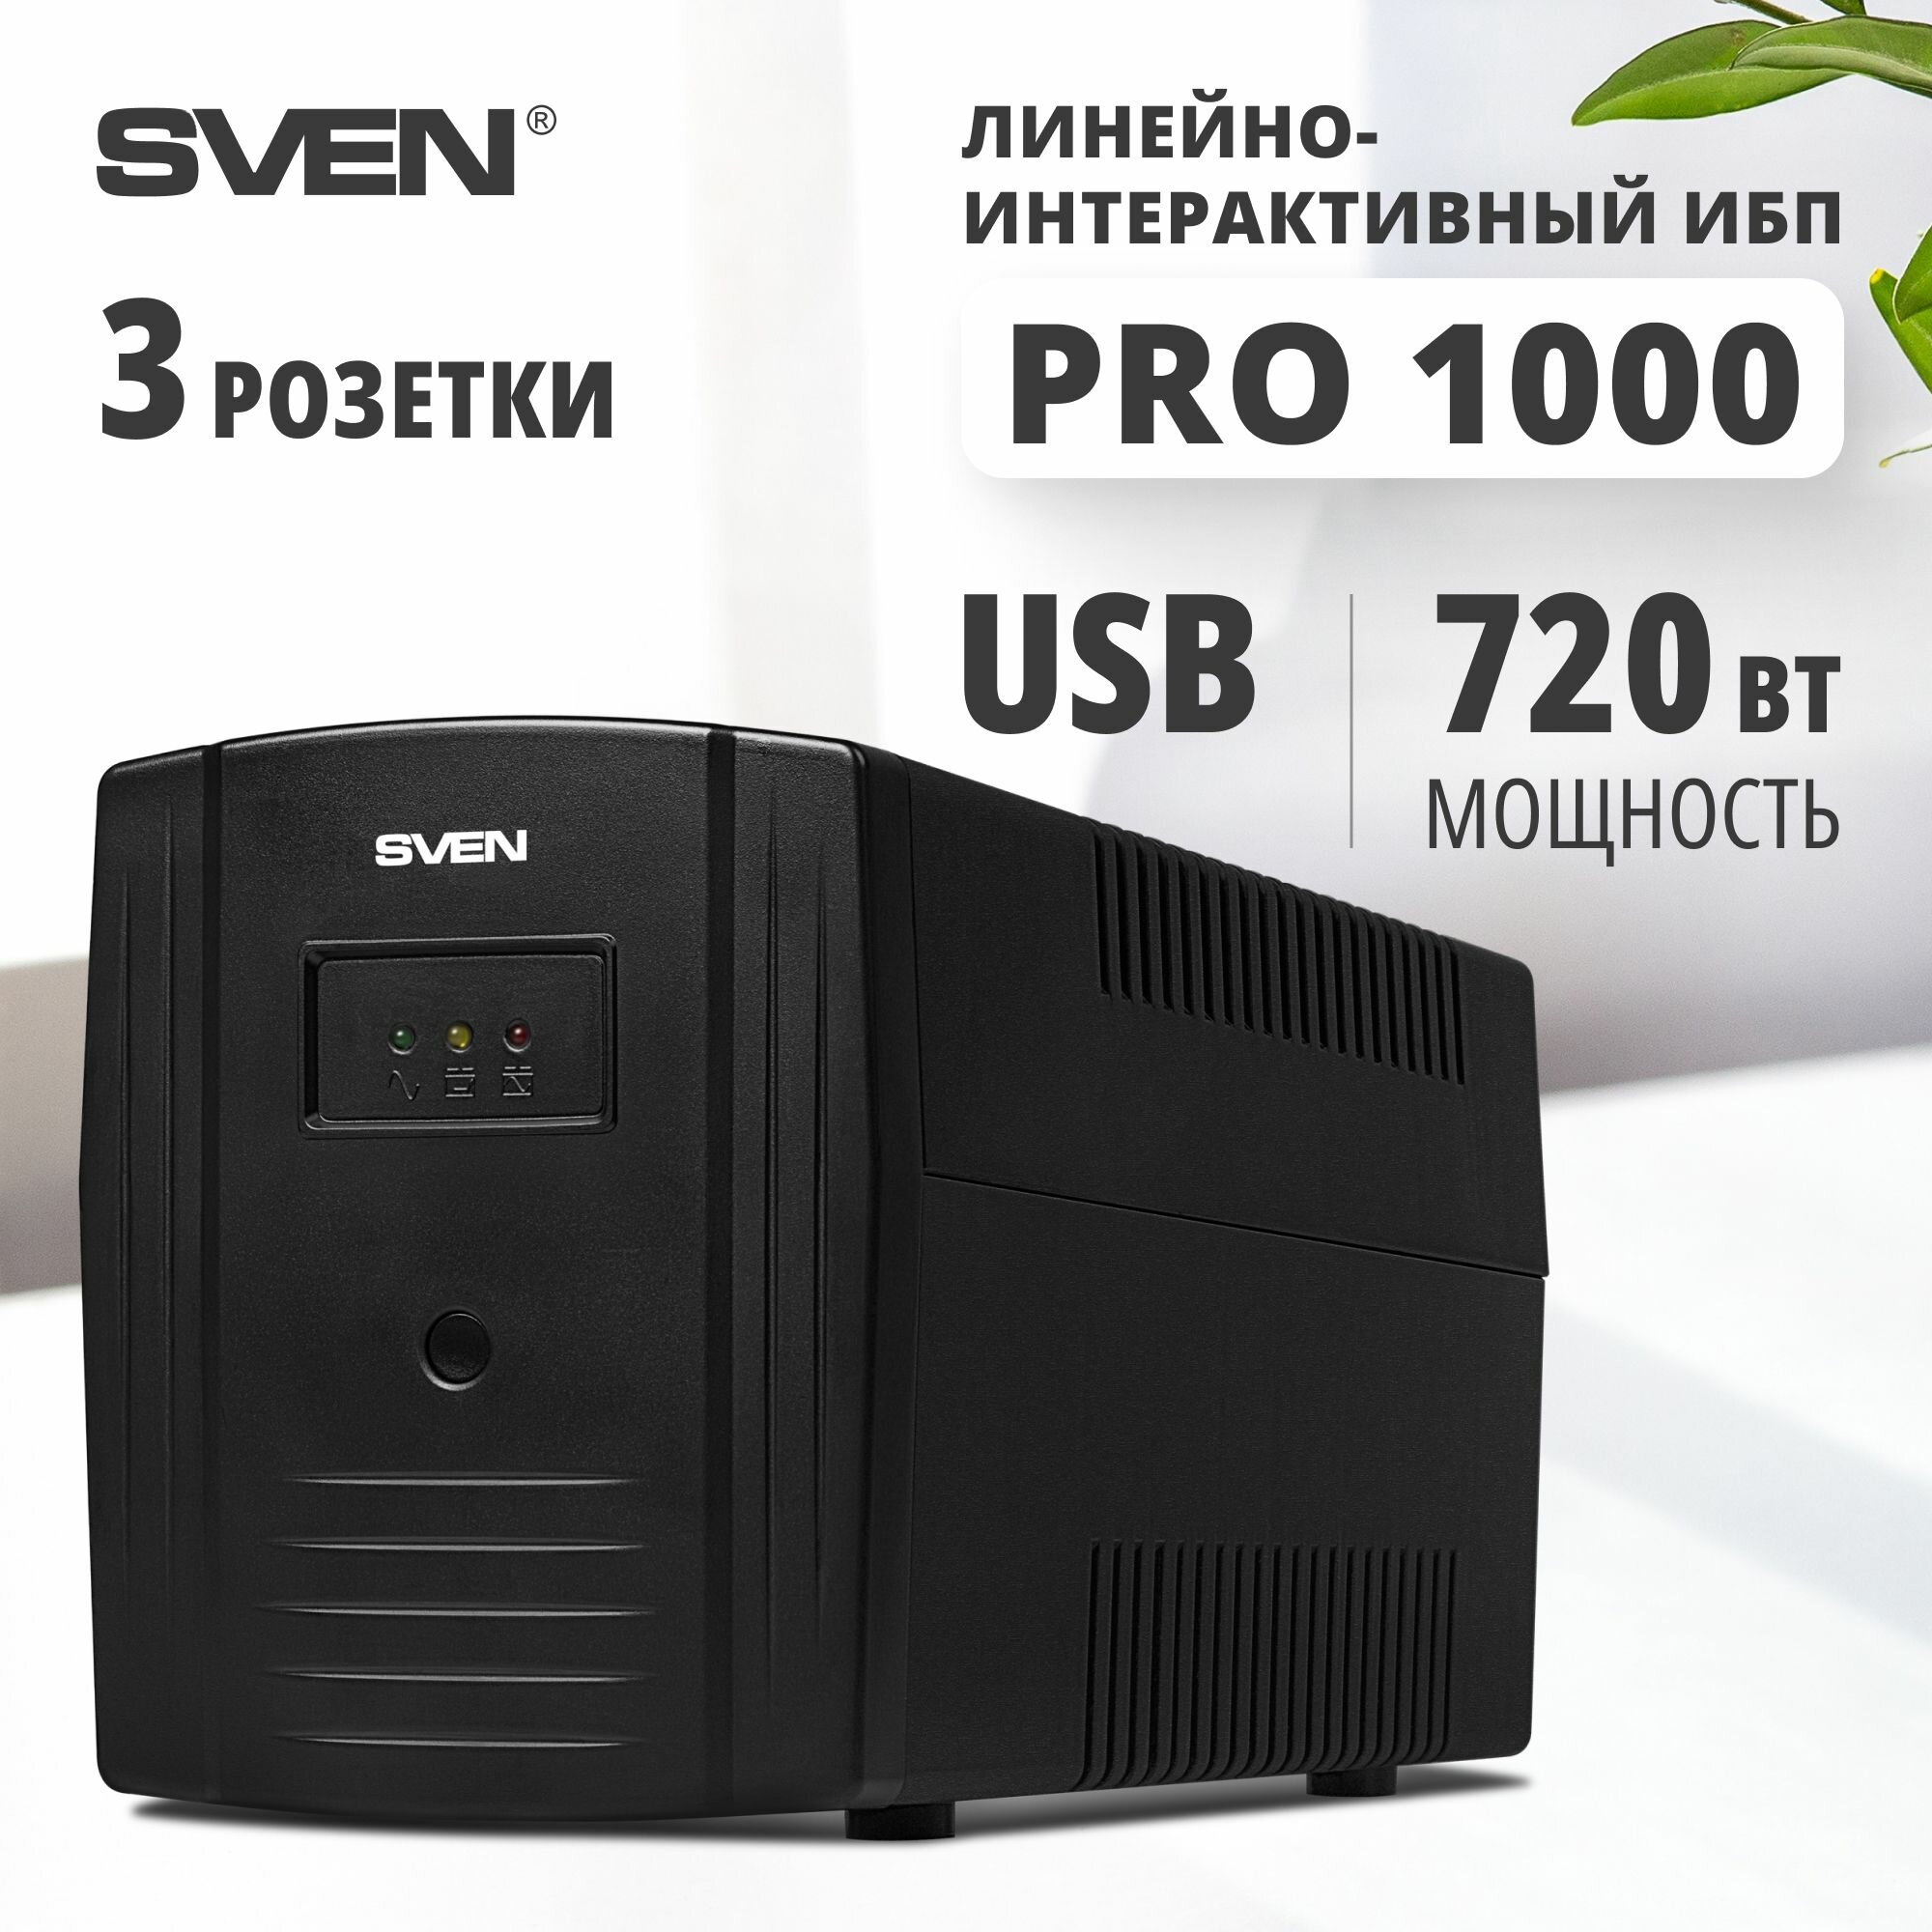 Интерактивный ИБП SVEN Pro 1000 (USB)